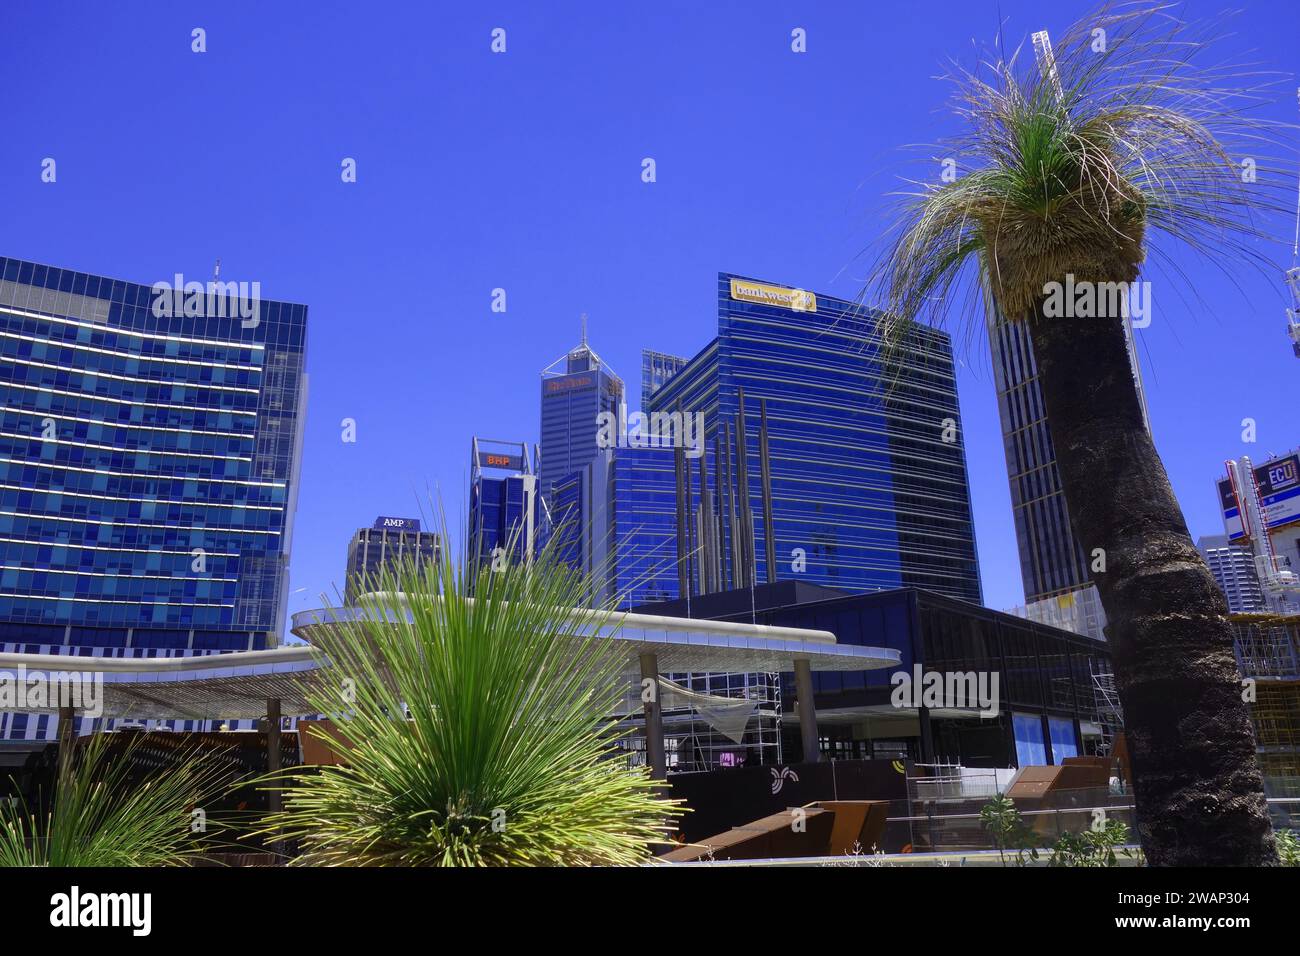 Skyline de la ville vue depuis Yagan Square, Perth, Australie occidentale. Pas de PR Banque D'Images